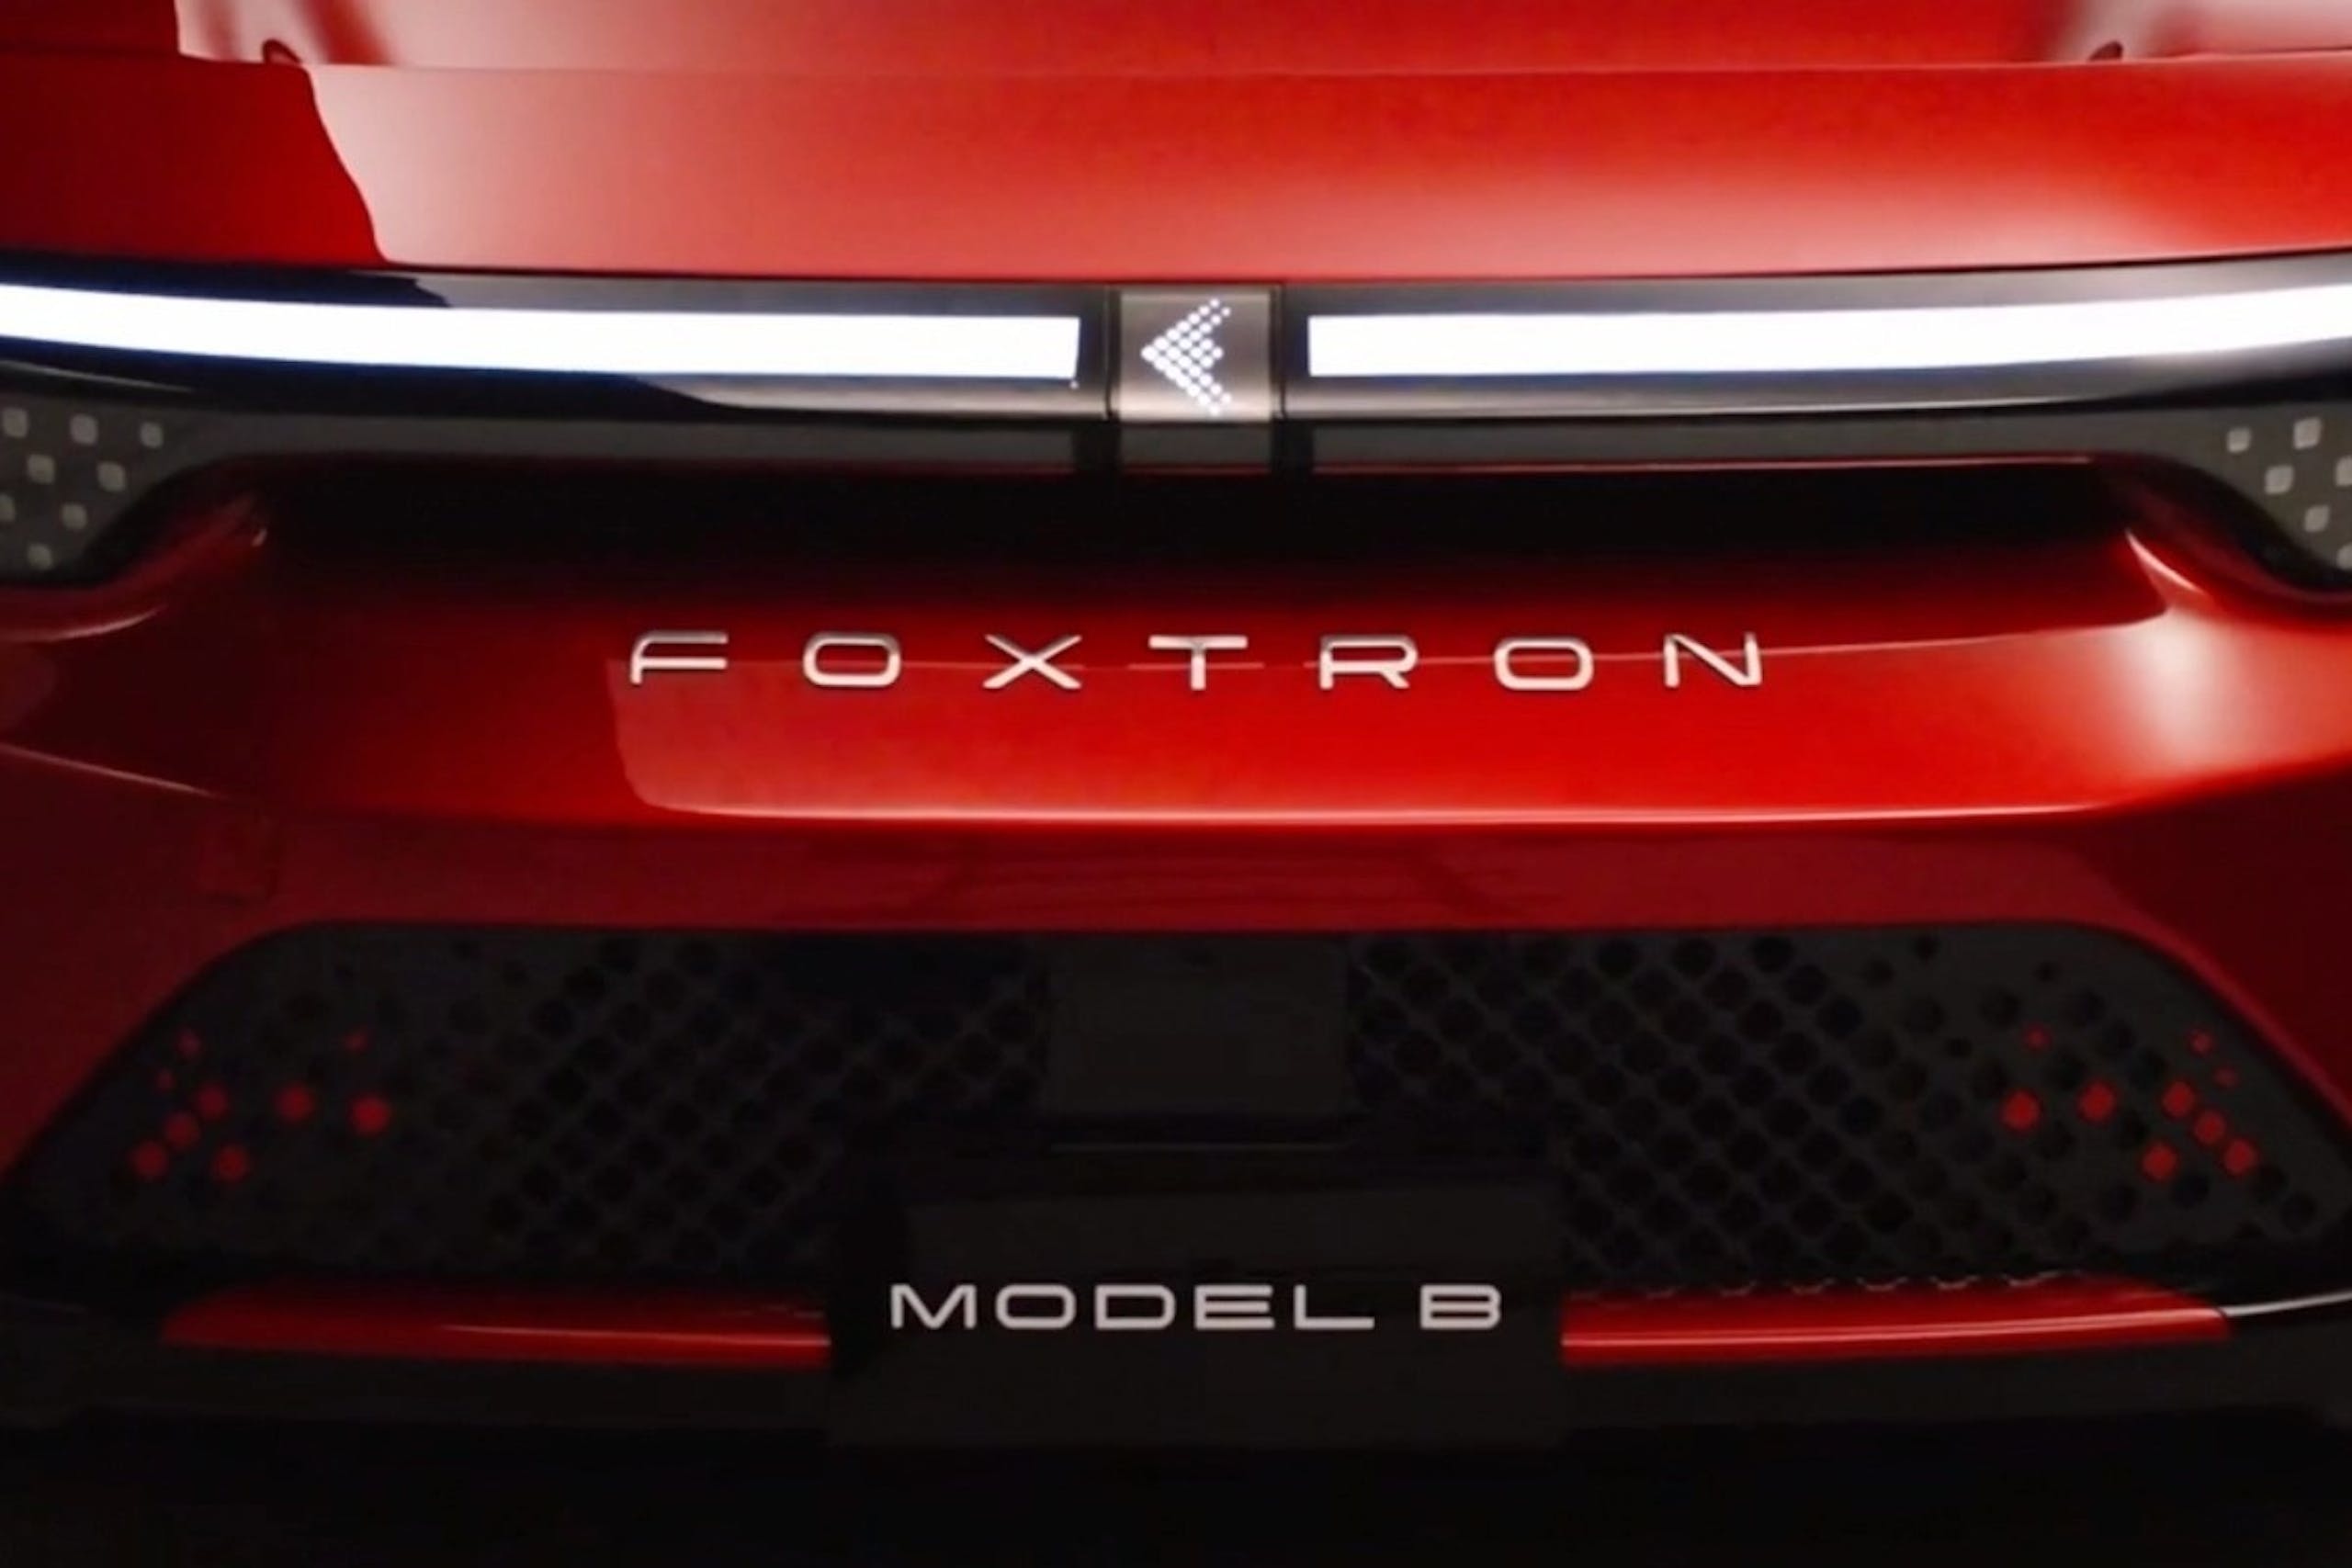 照片中提到了FOXTRON、MODEL B，跟型號公司有關，包含了電子車、電動車、汽車、福特 C 型、運動型多功能車